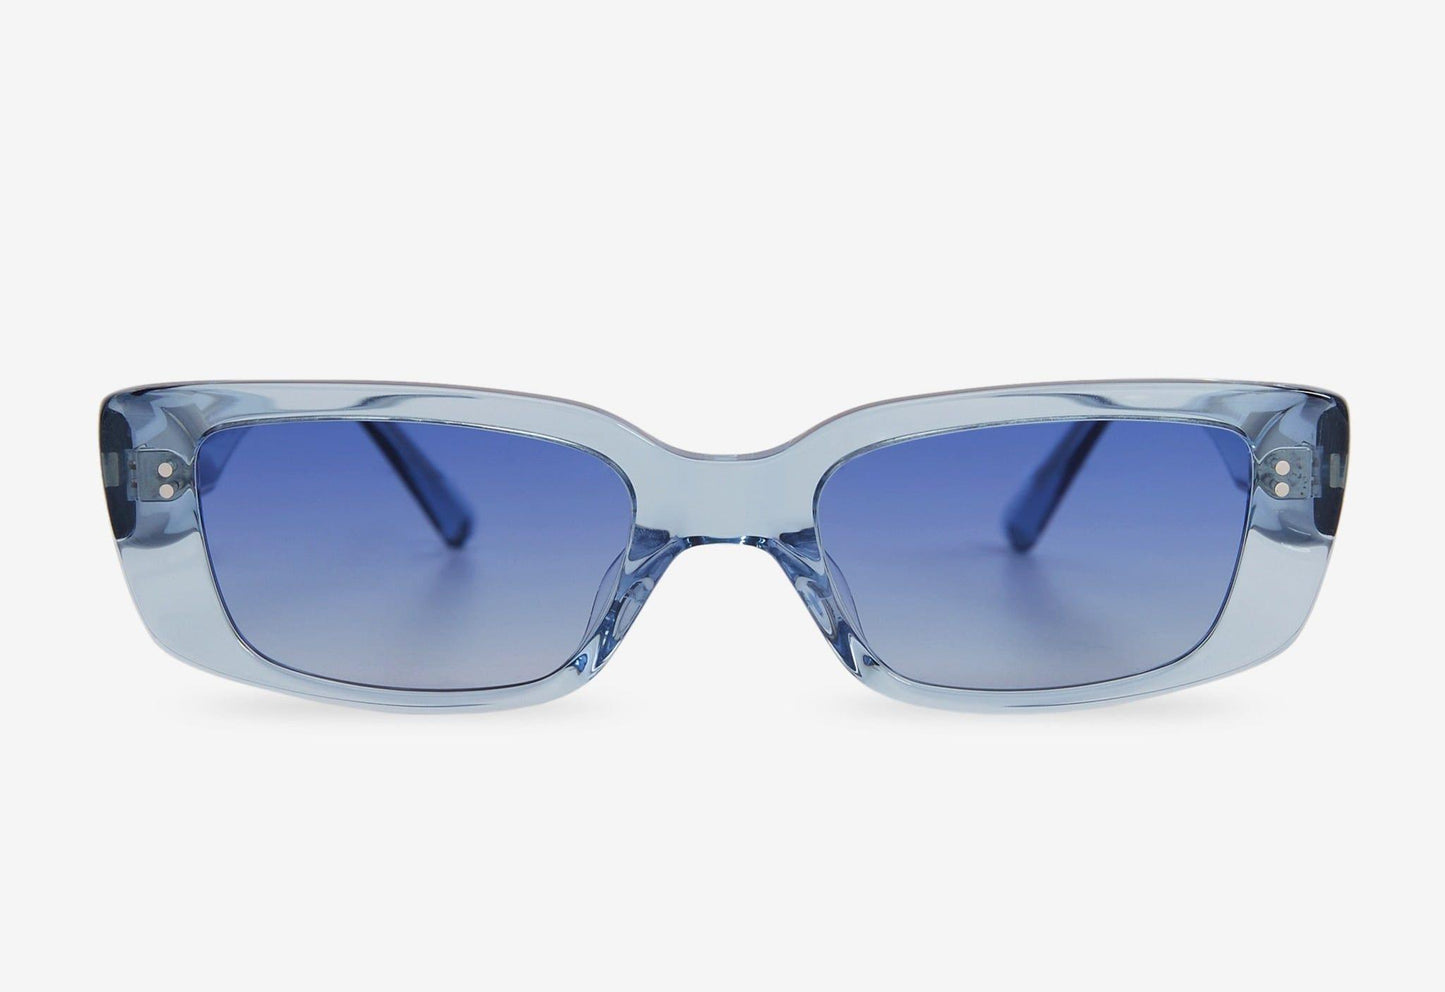 Grace, Rectangular sunglasses for men and women blue lens UV400 protection